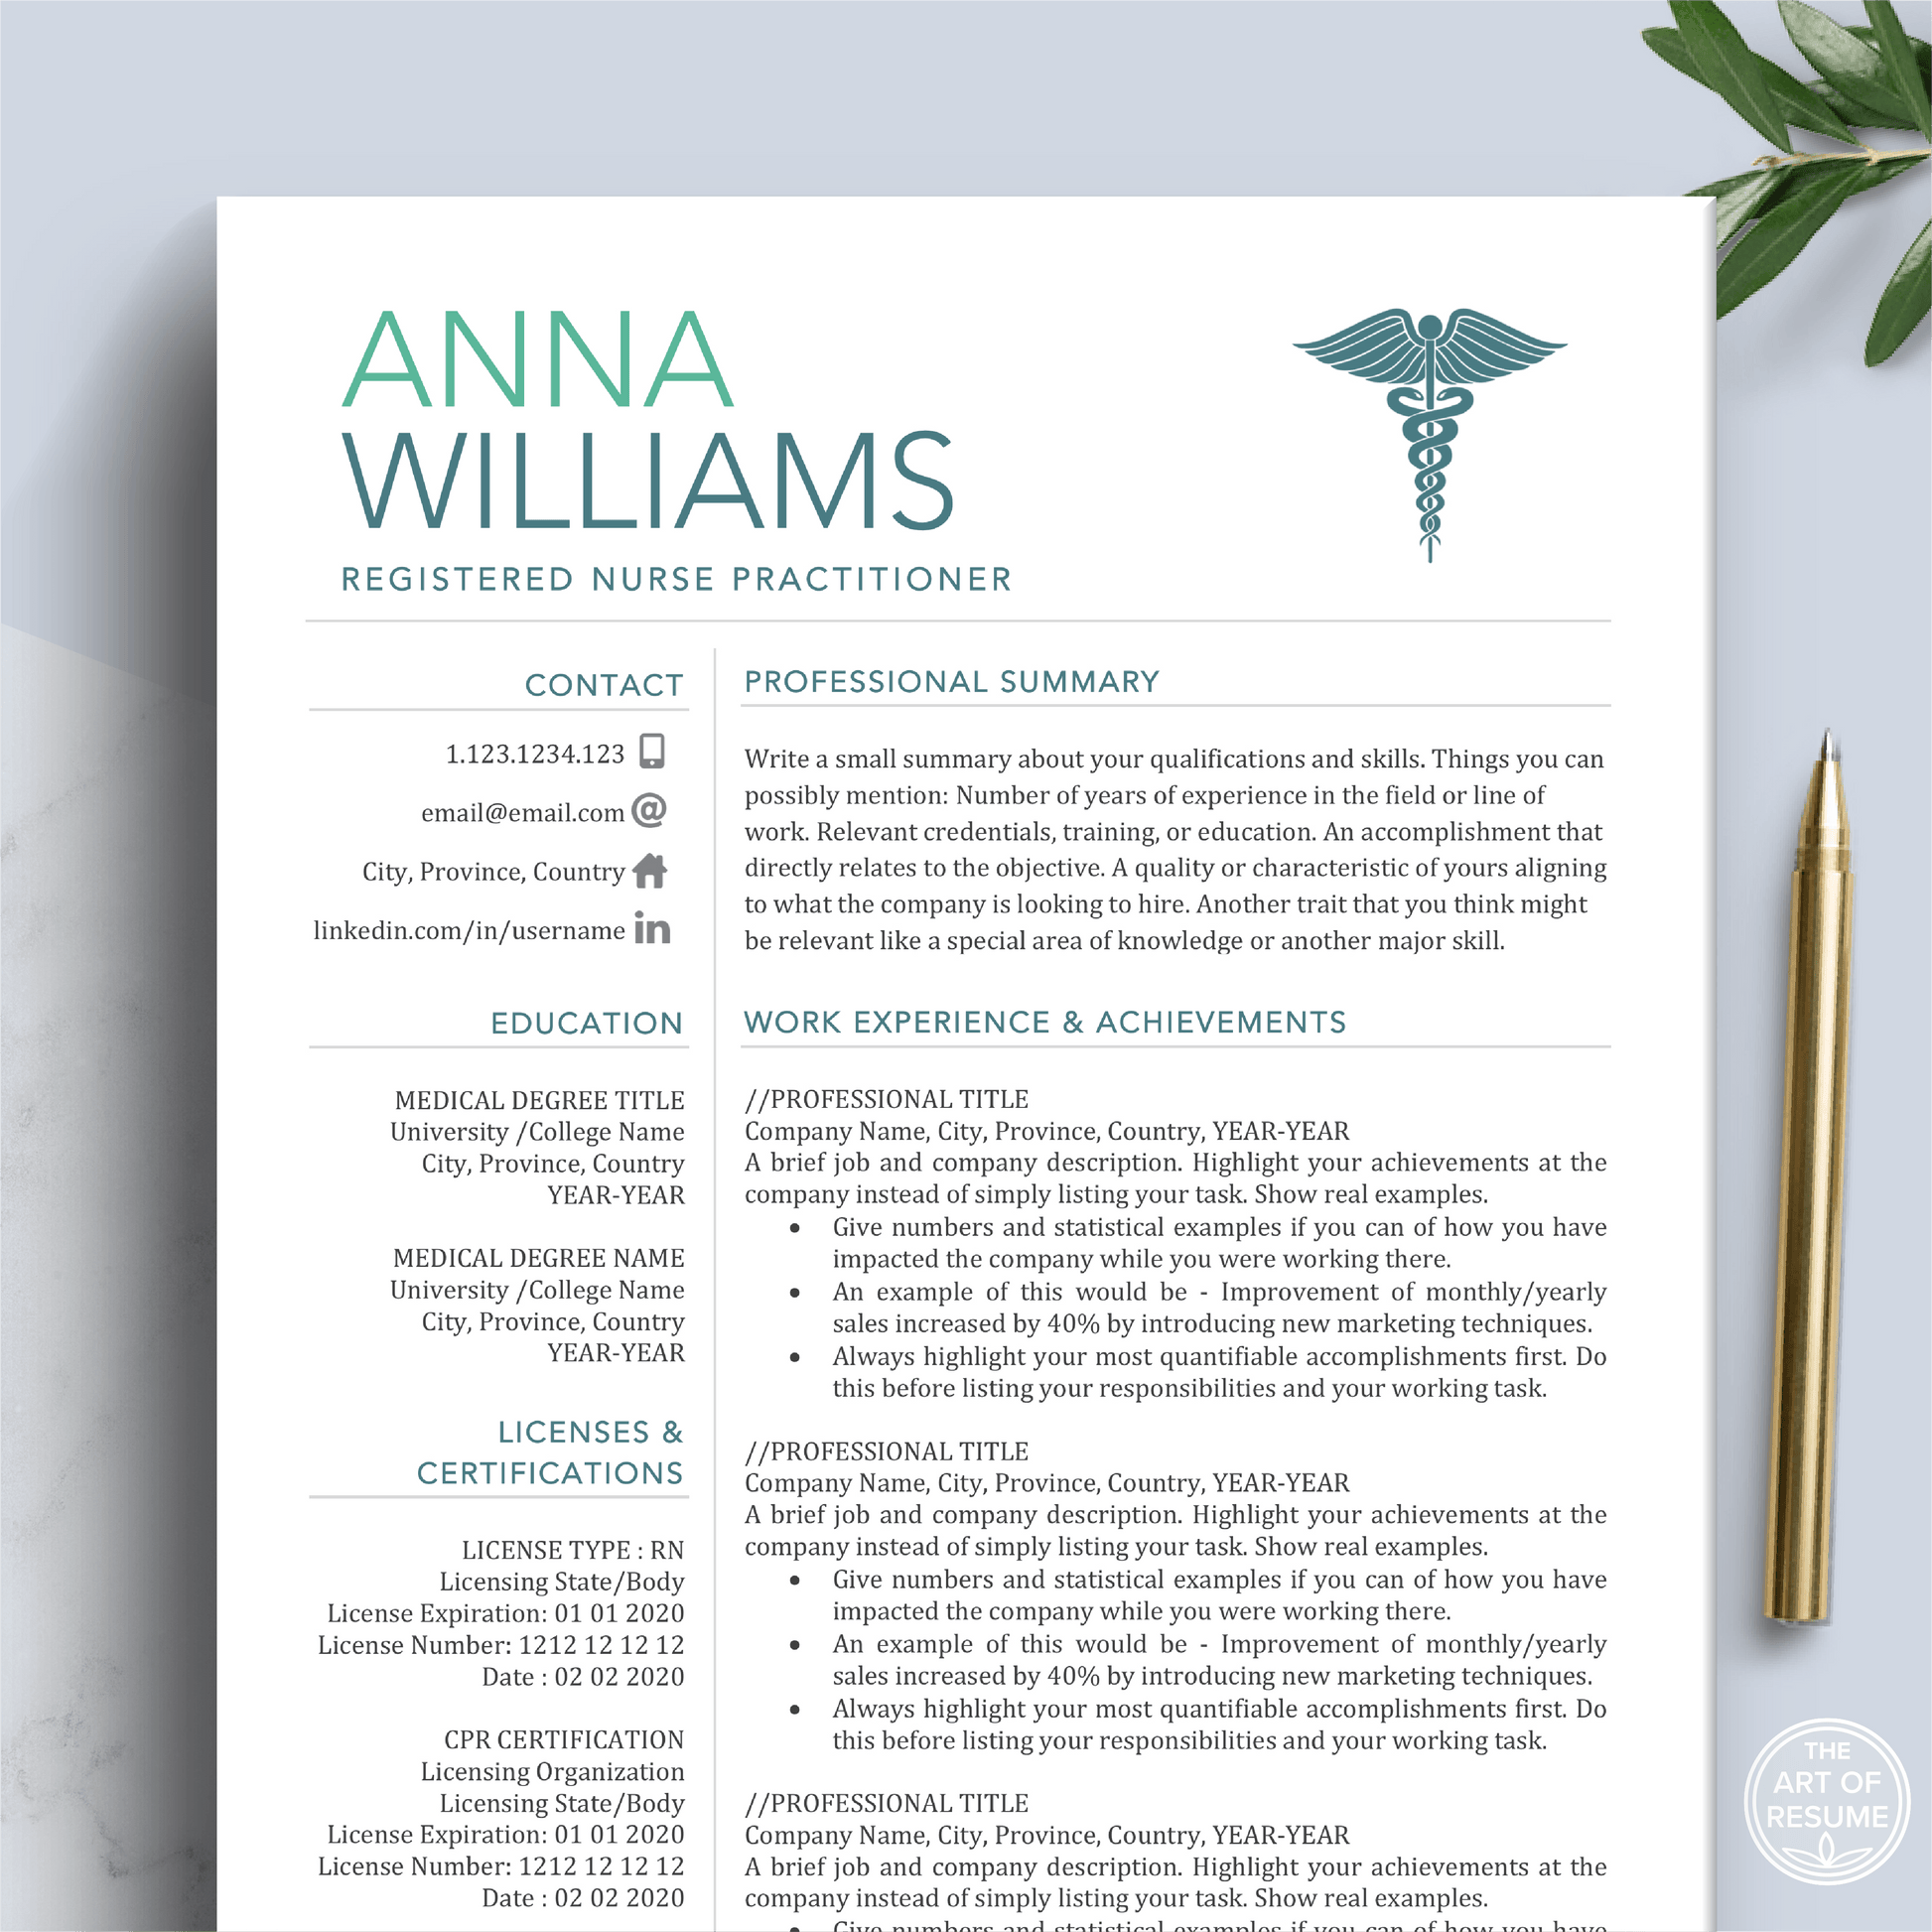 RN Nurse Resume Template | Medical CV | Nursing Student Curriculum Vitae - The Art of Resume